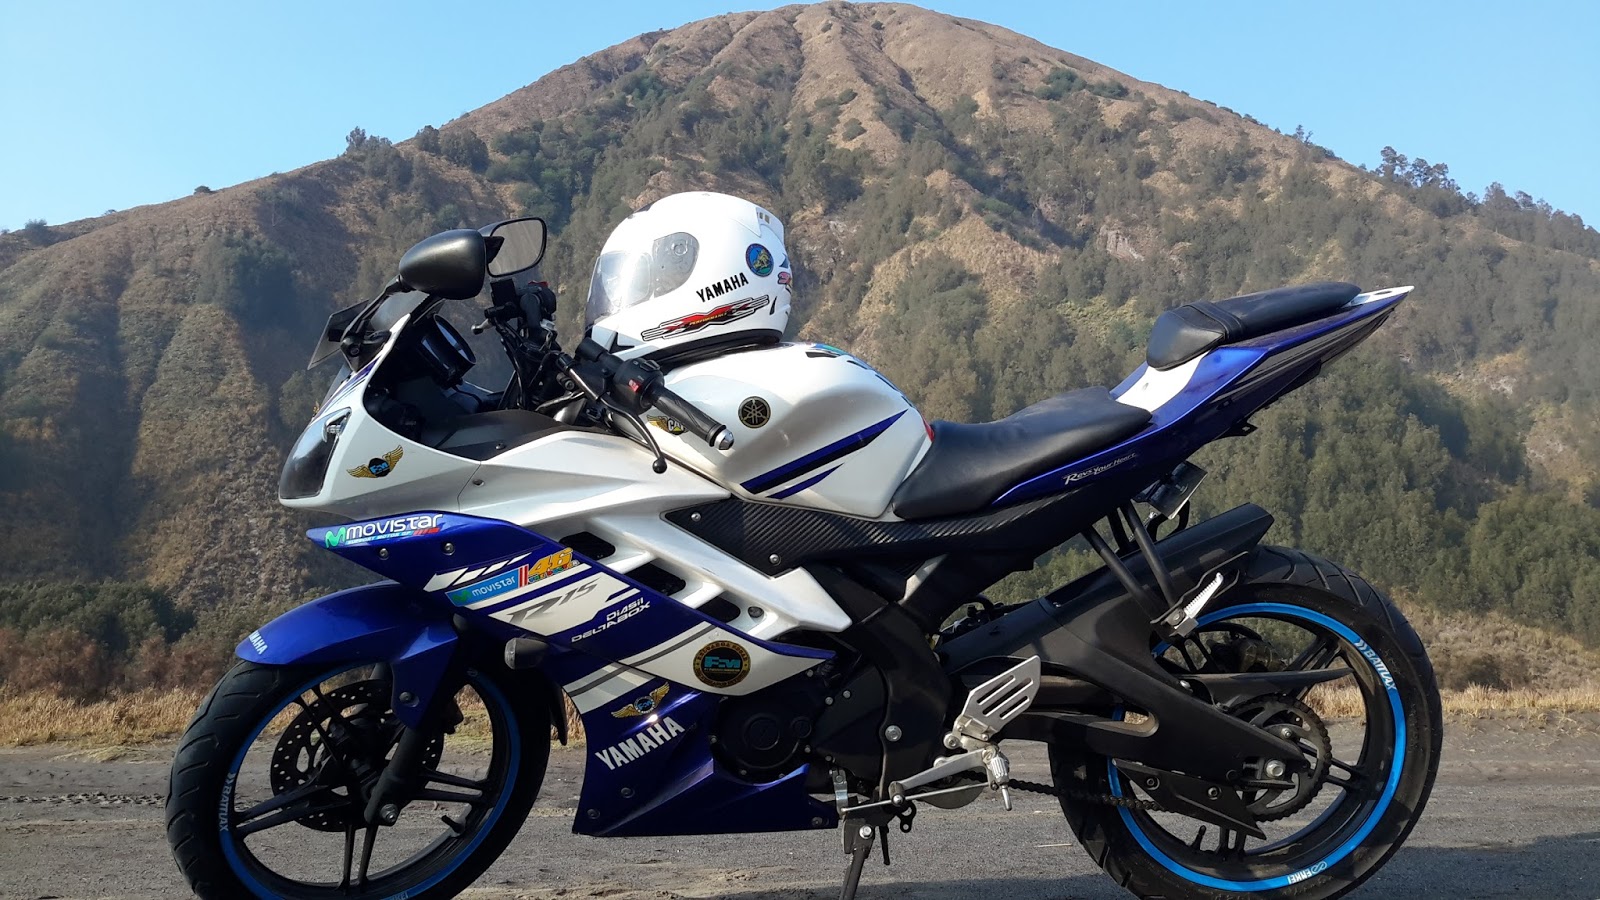 Gambar Modifikasi Motor Yamaha R15 Terbaru Terbaru Dan Terkeren